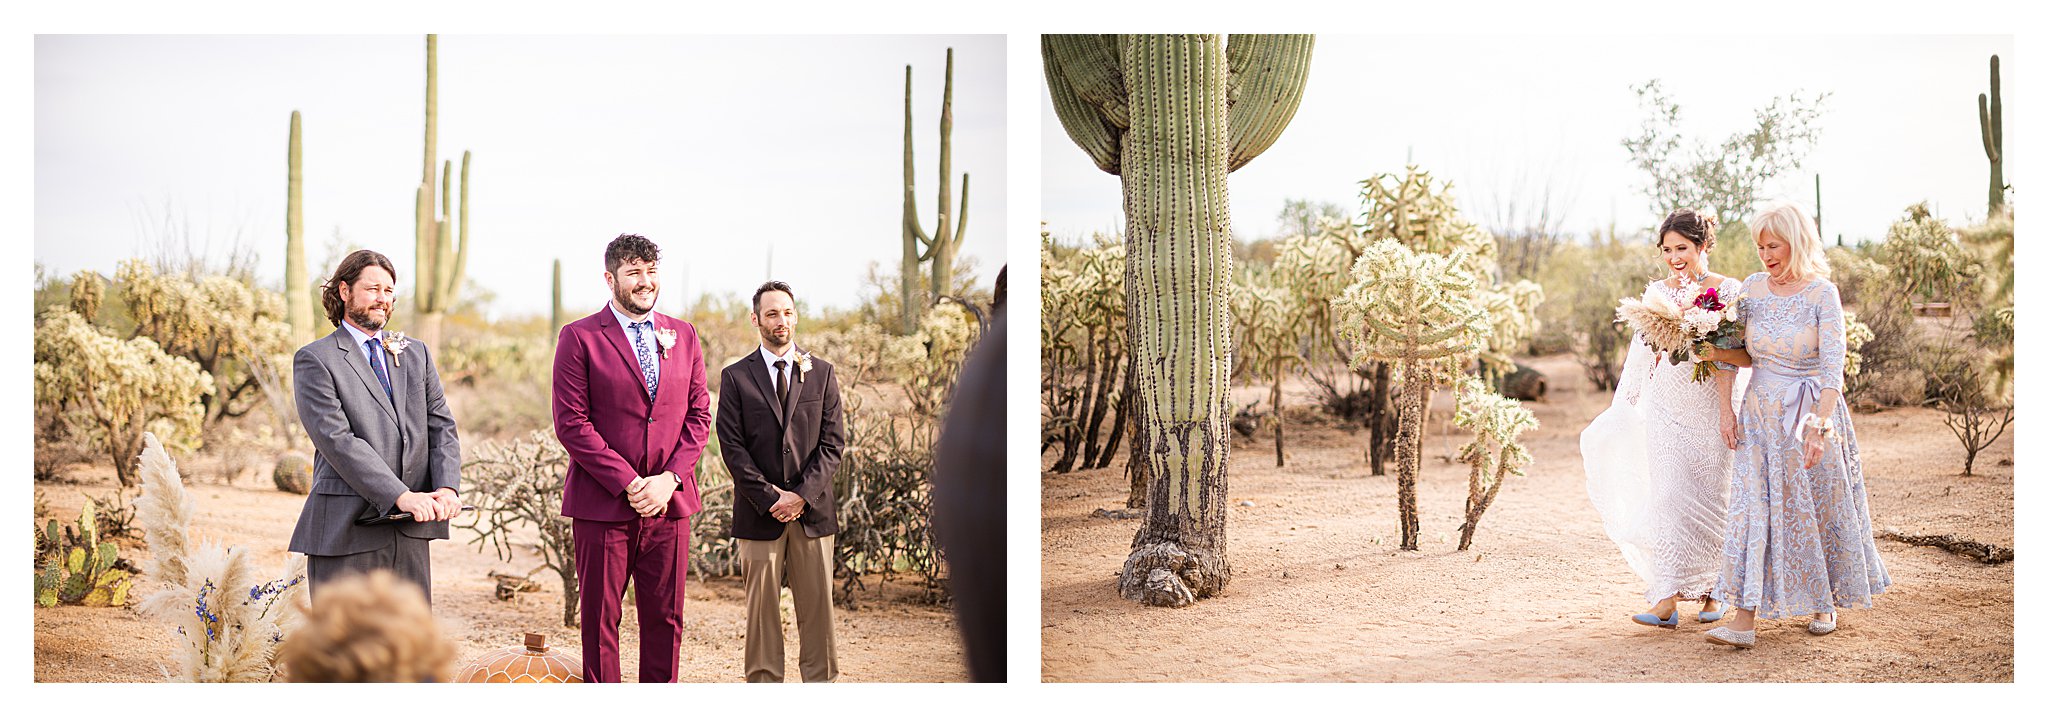 Ceremony in the desert boho wedding